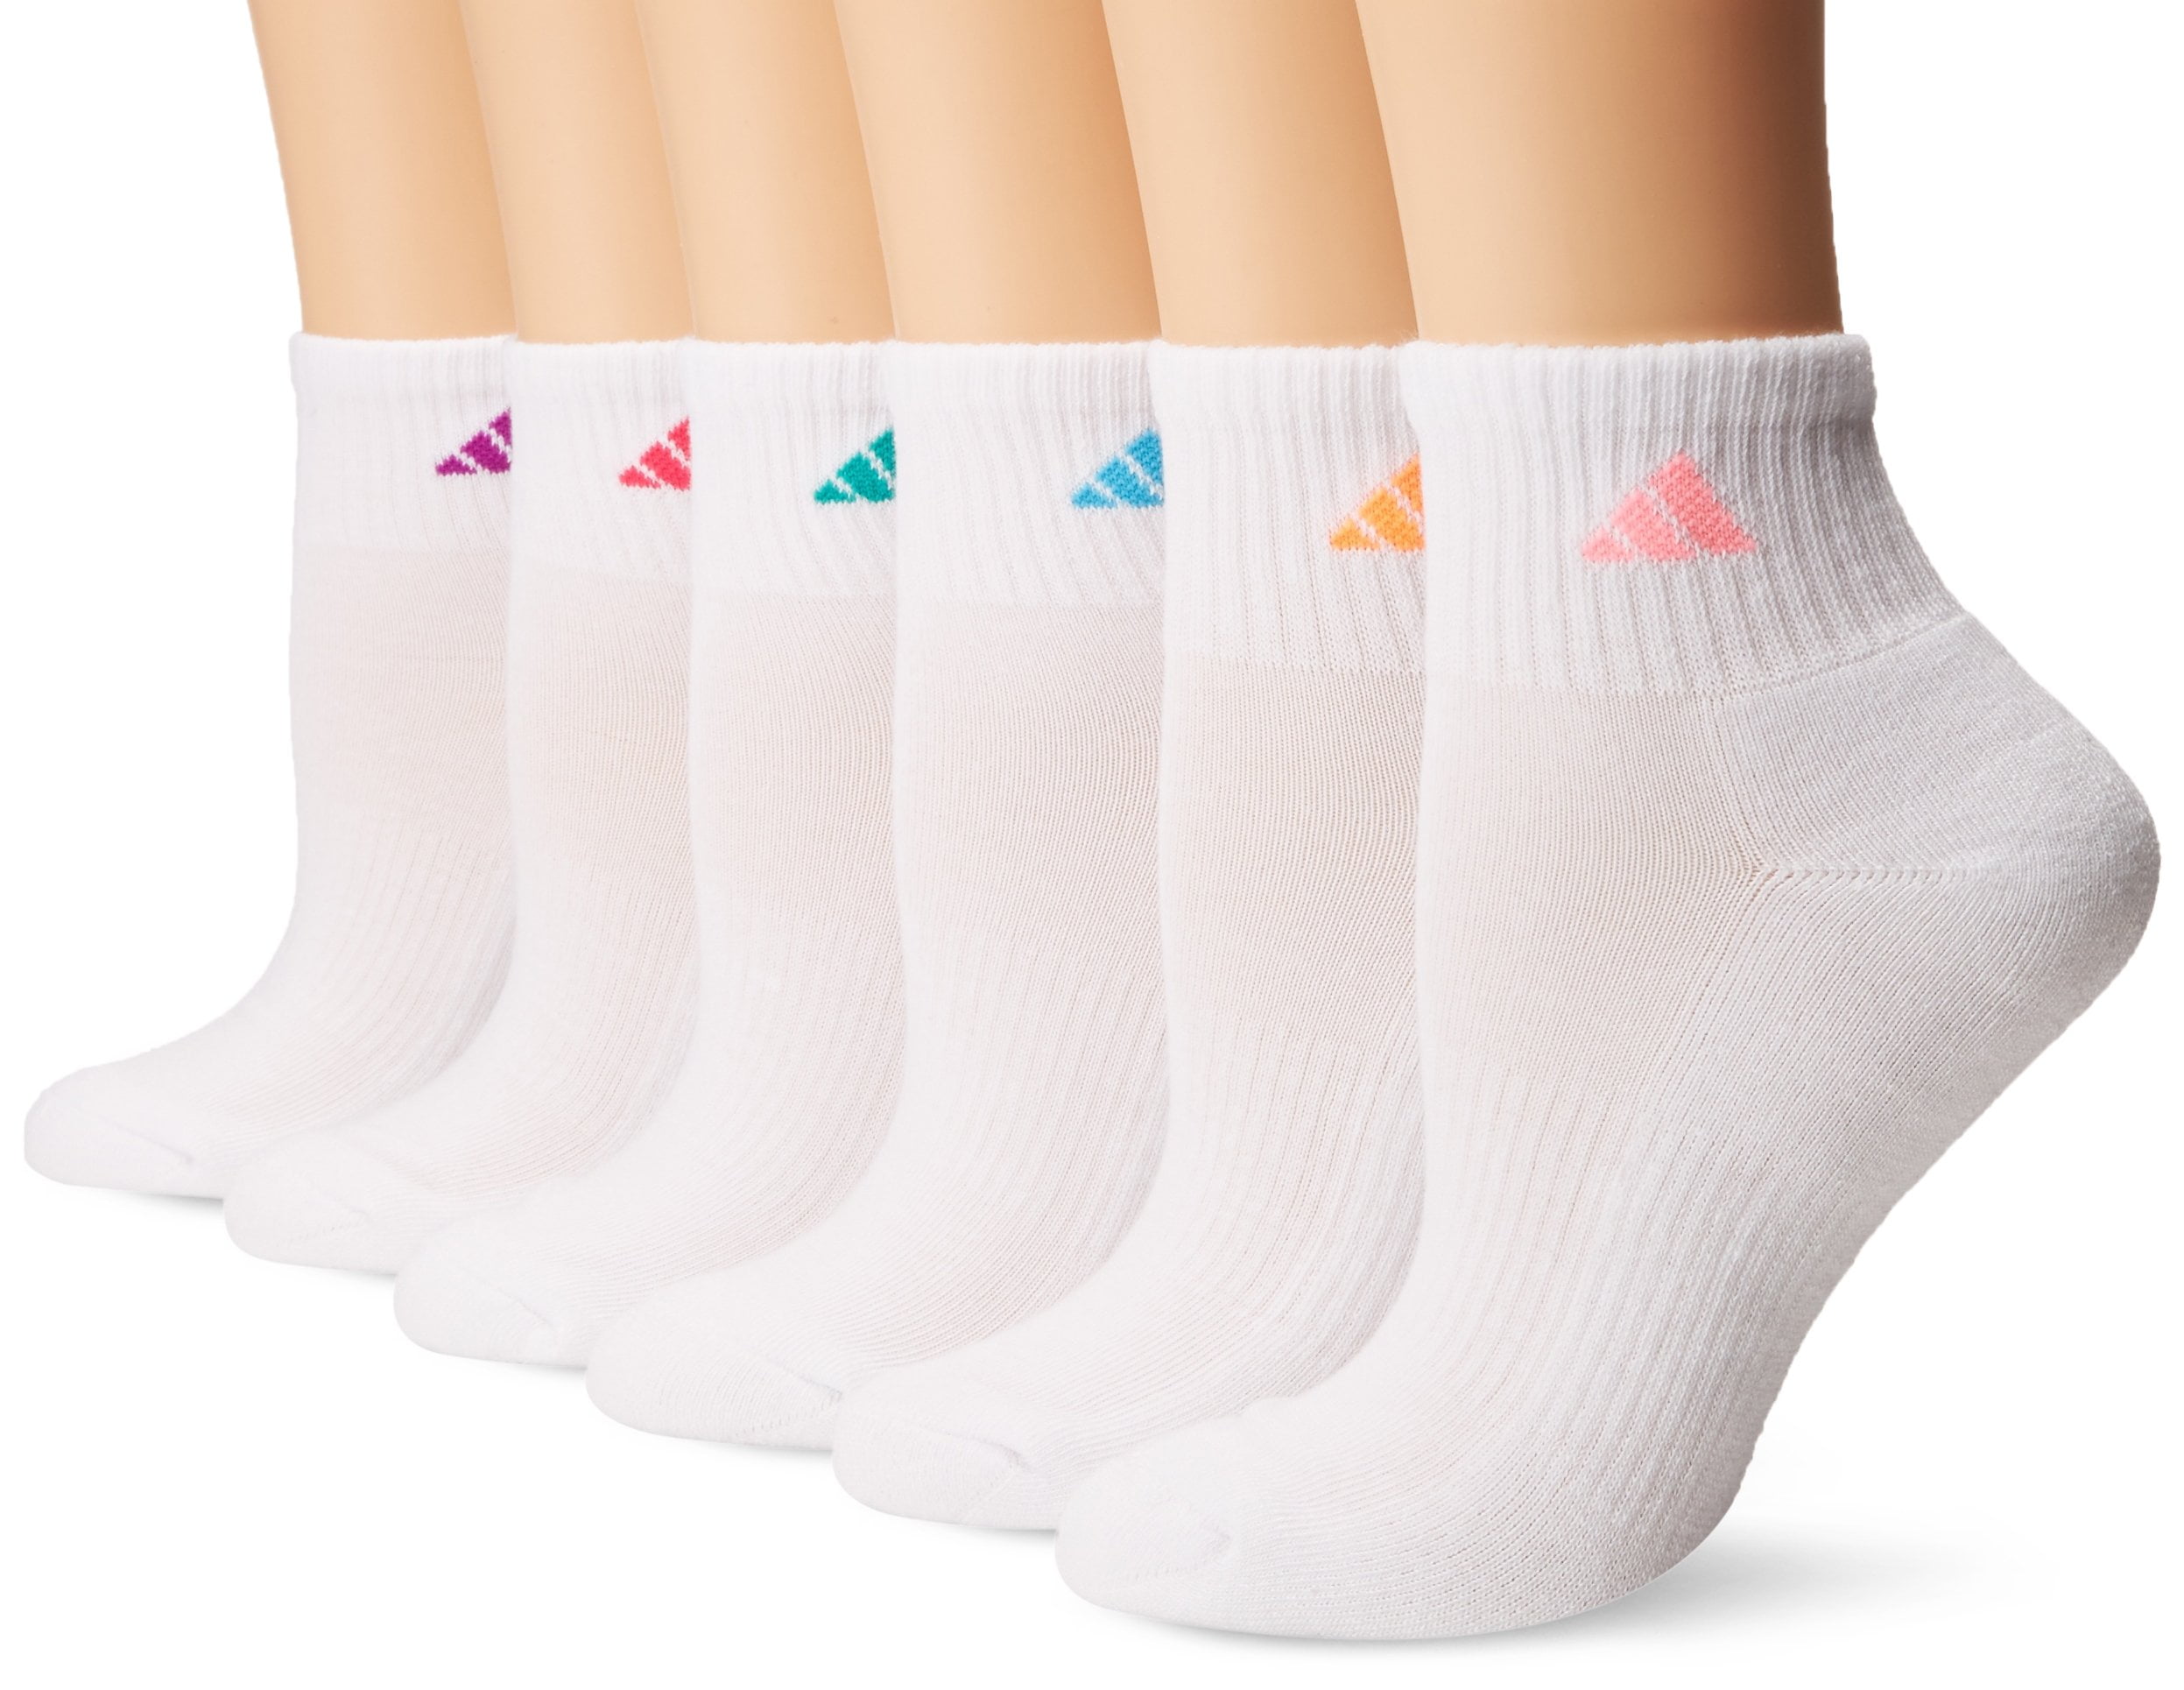 Adidas - adidas Women's Quarter Sock (6-Pack) - Walmart.com - Walmart.com